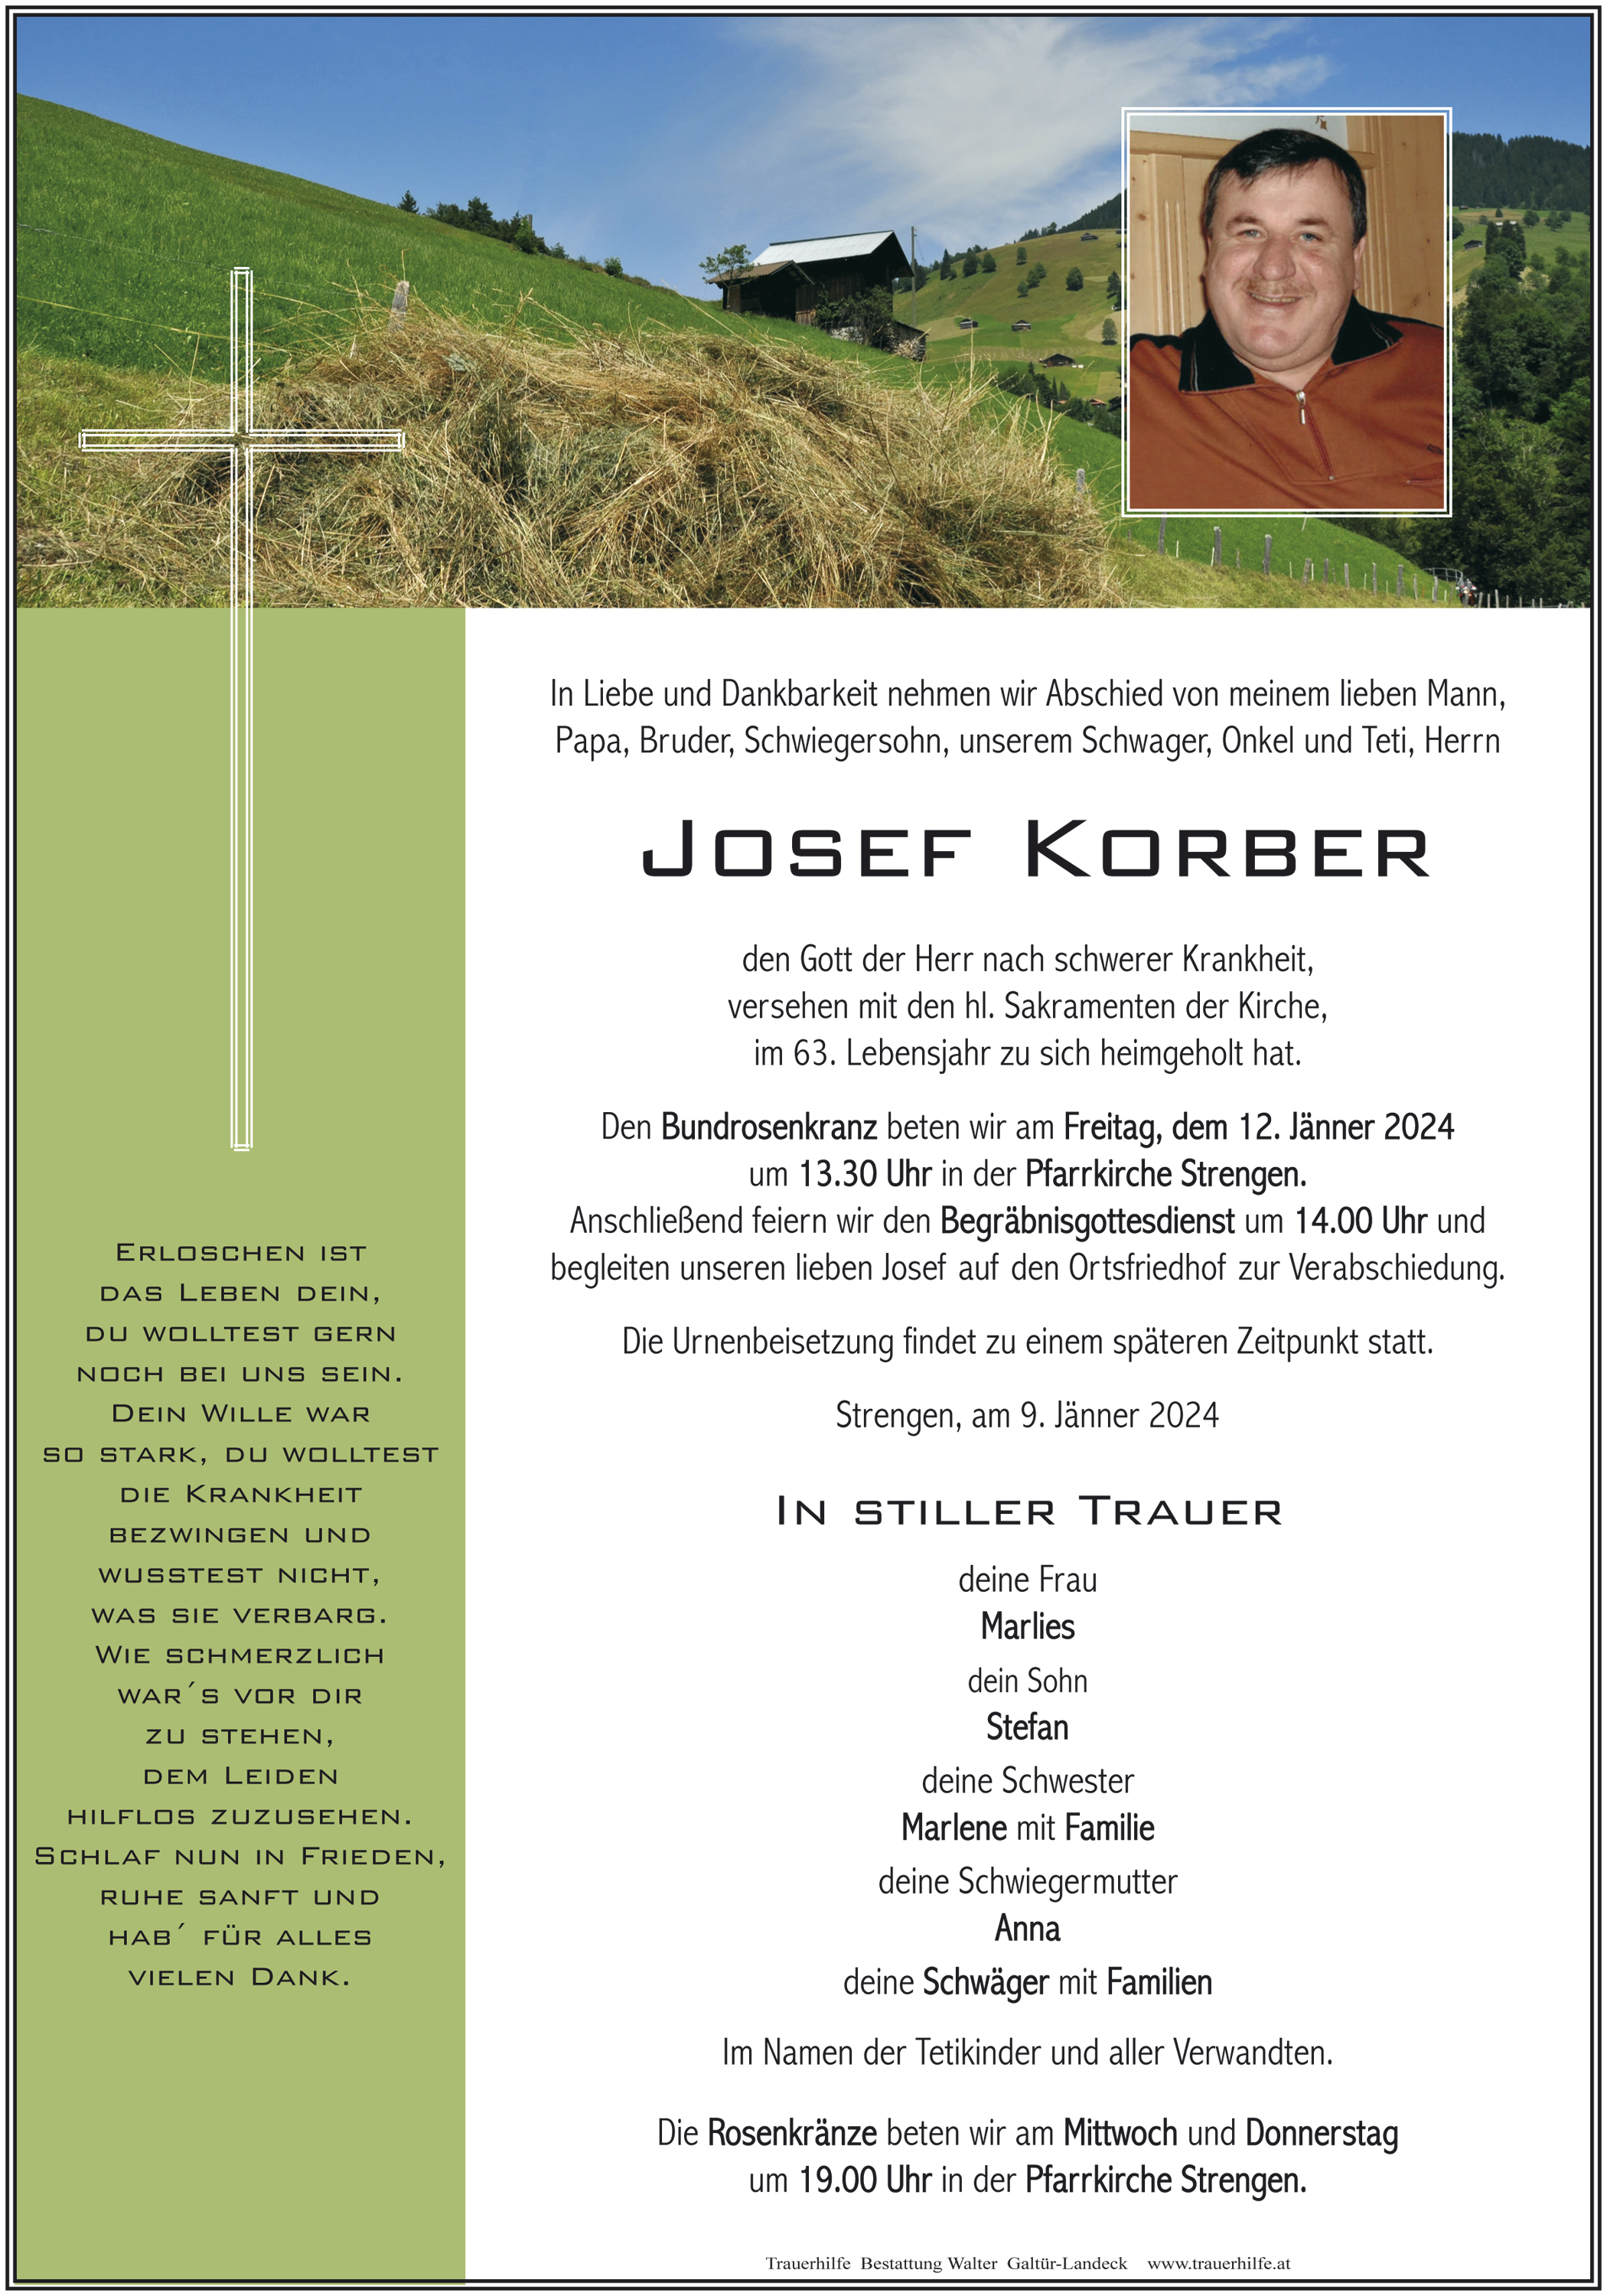 Josef Korber